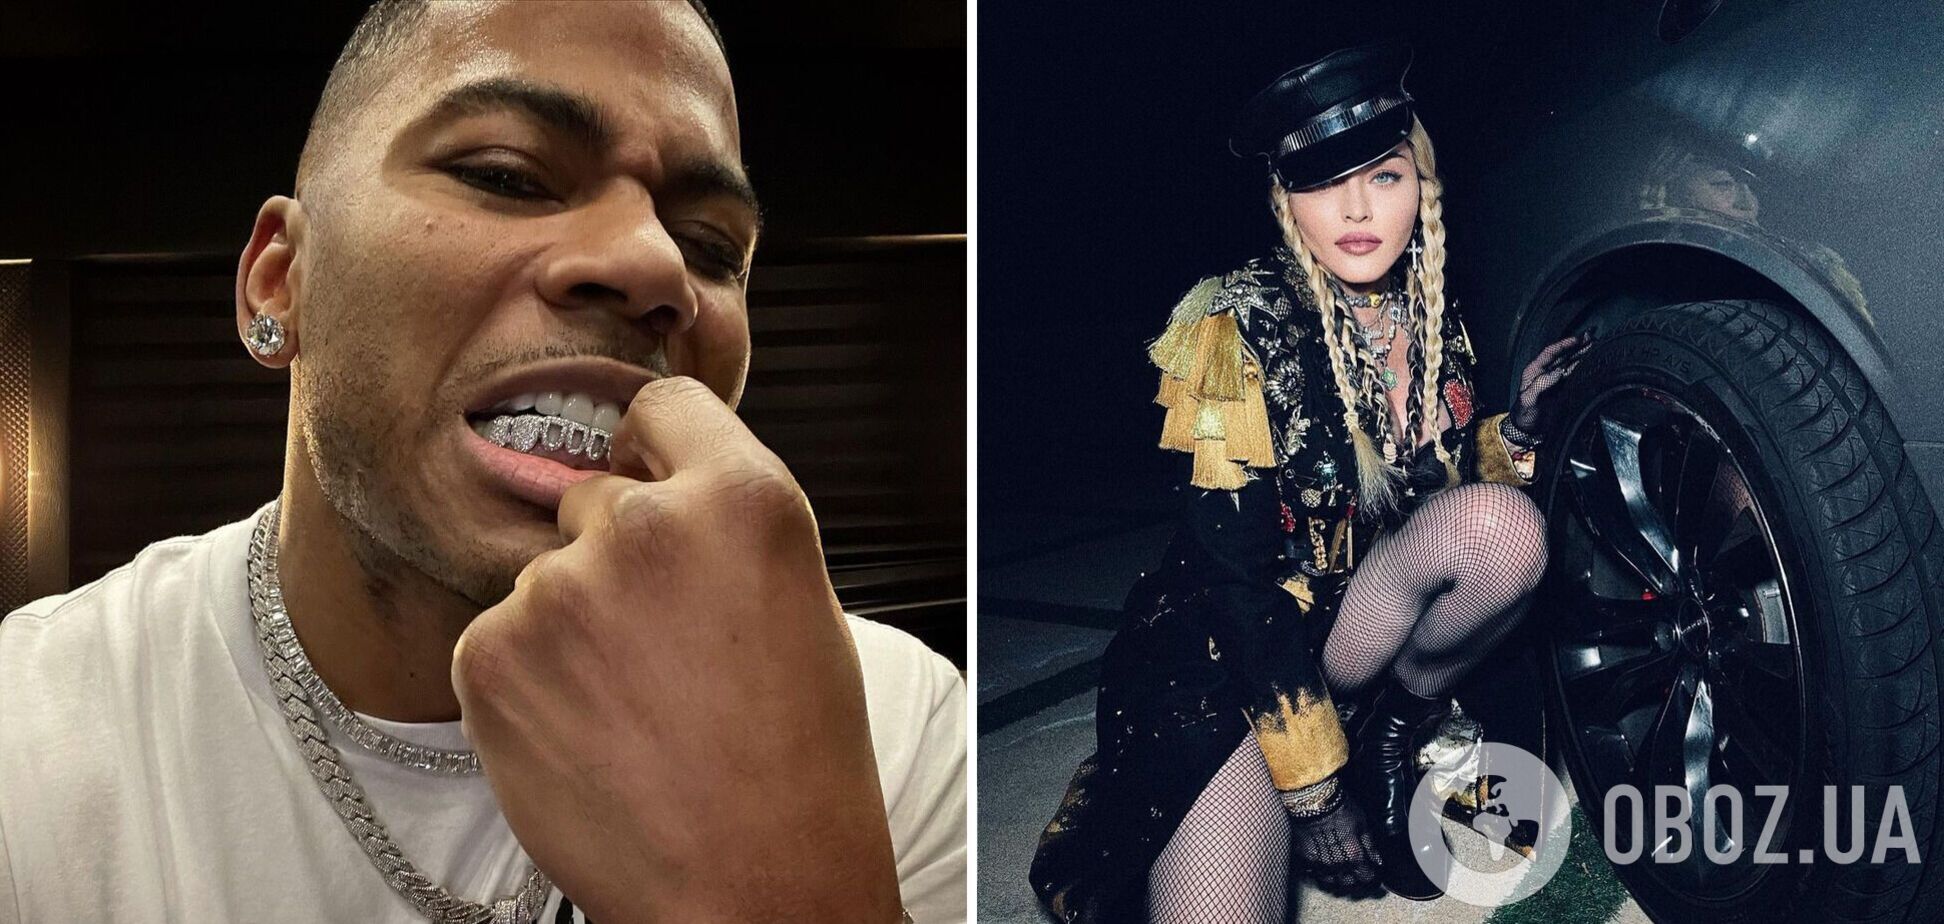 Репера Nelly розкритикували через коментар під відвертими фото Мадонни